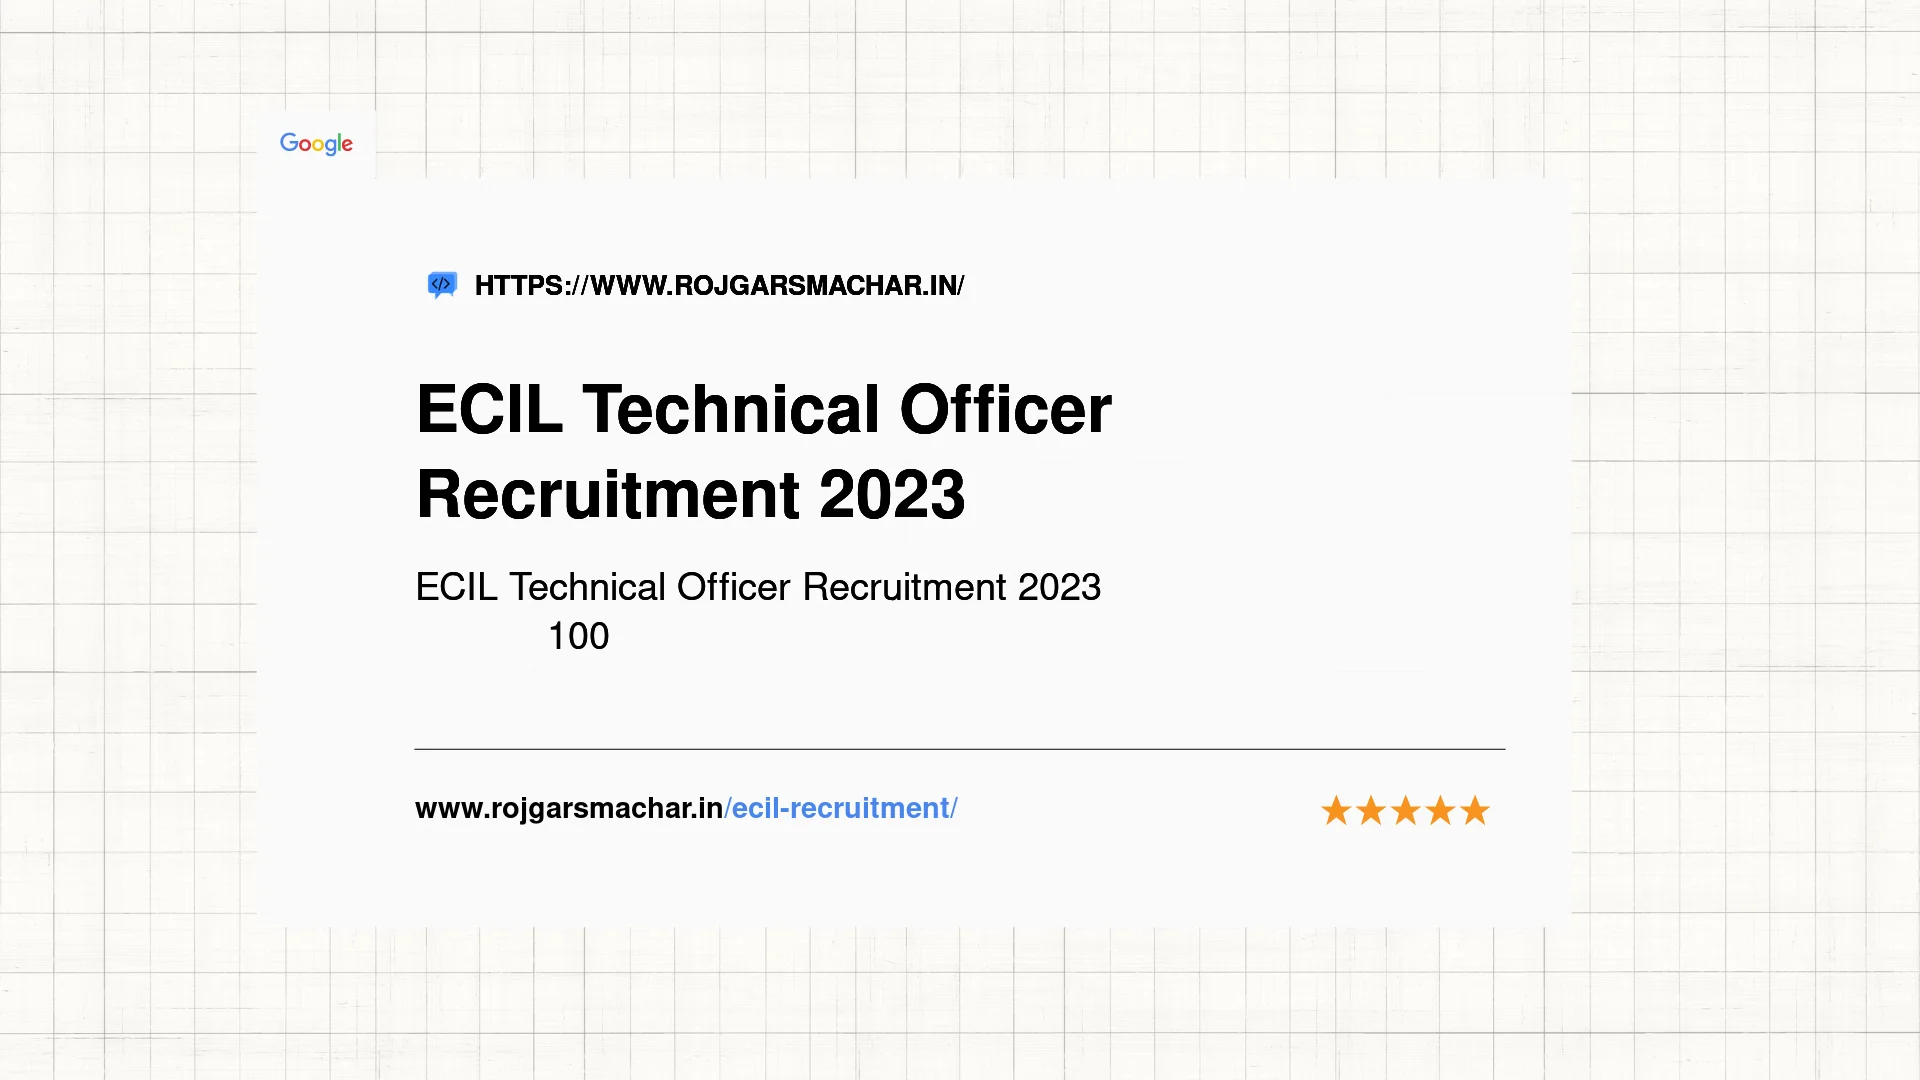 ECIL Technical Officer Recruitment 2023 इलेक्ट्रॉनिक्स कारपोरेशन ऑफ़ इंडियन लिमिटेड में 100 पदों पर भर्ती का विज्ञापन जारी